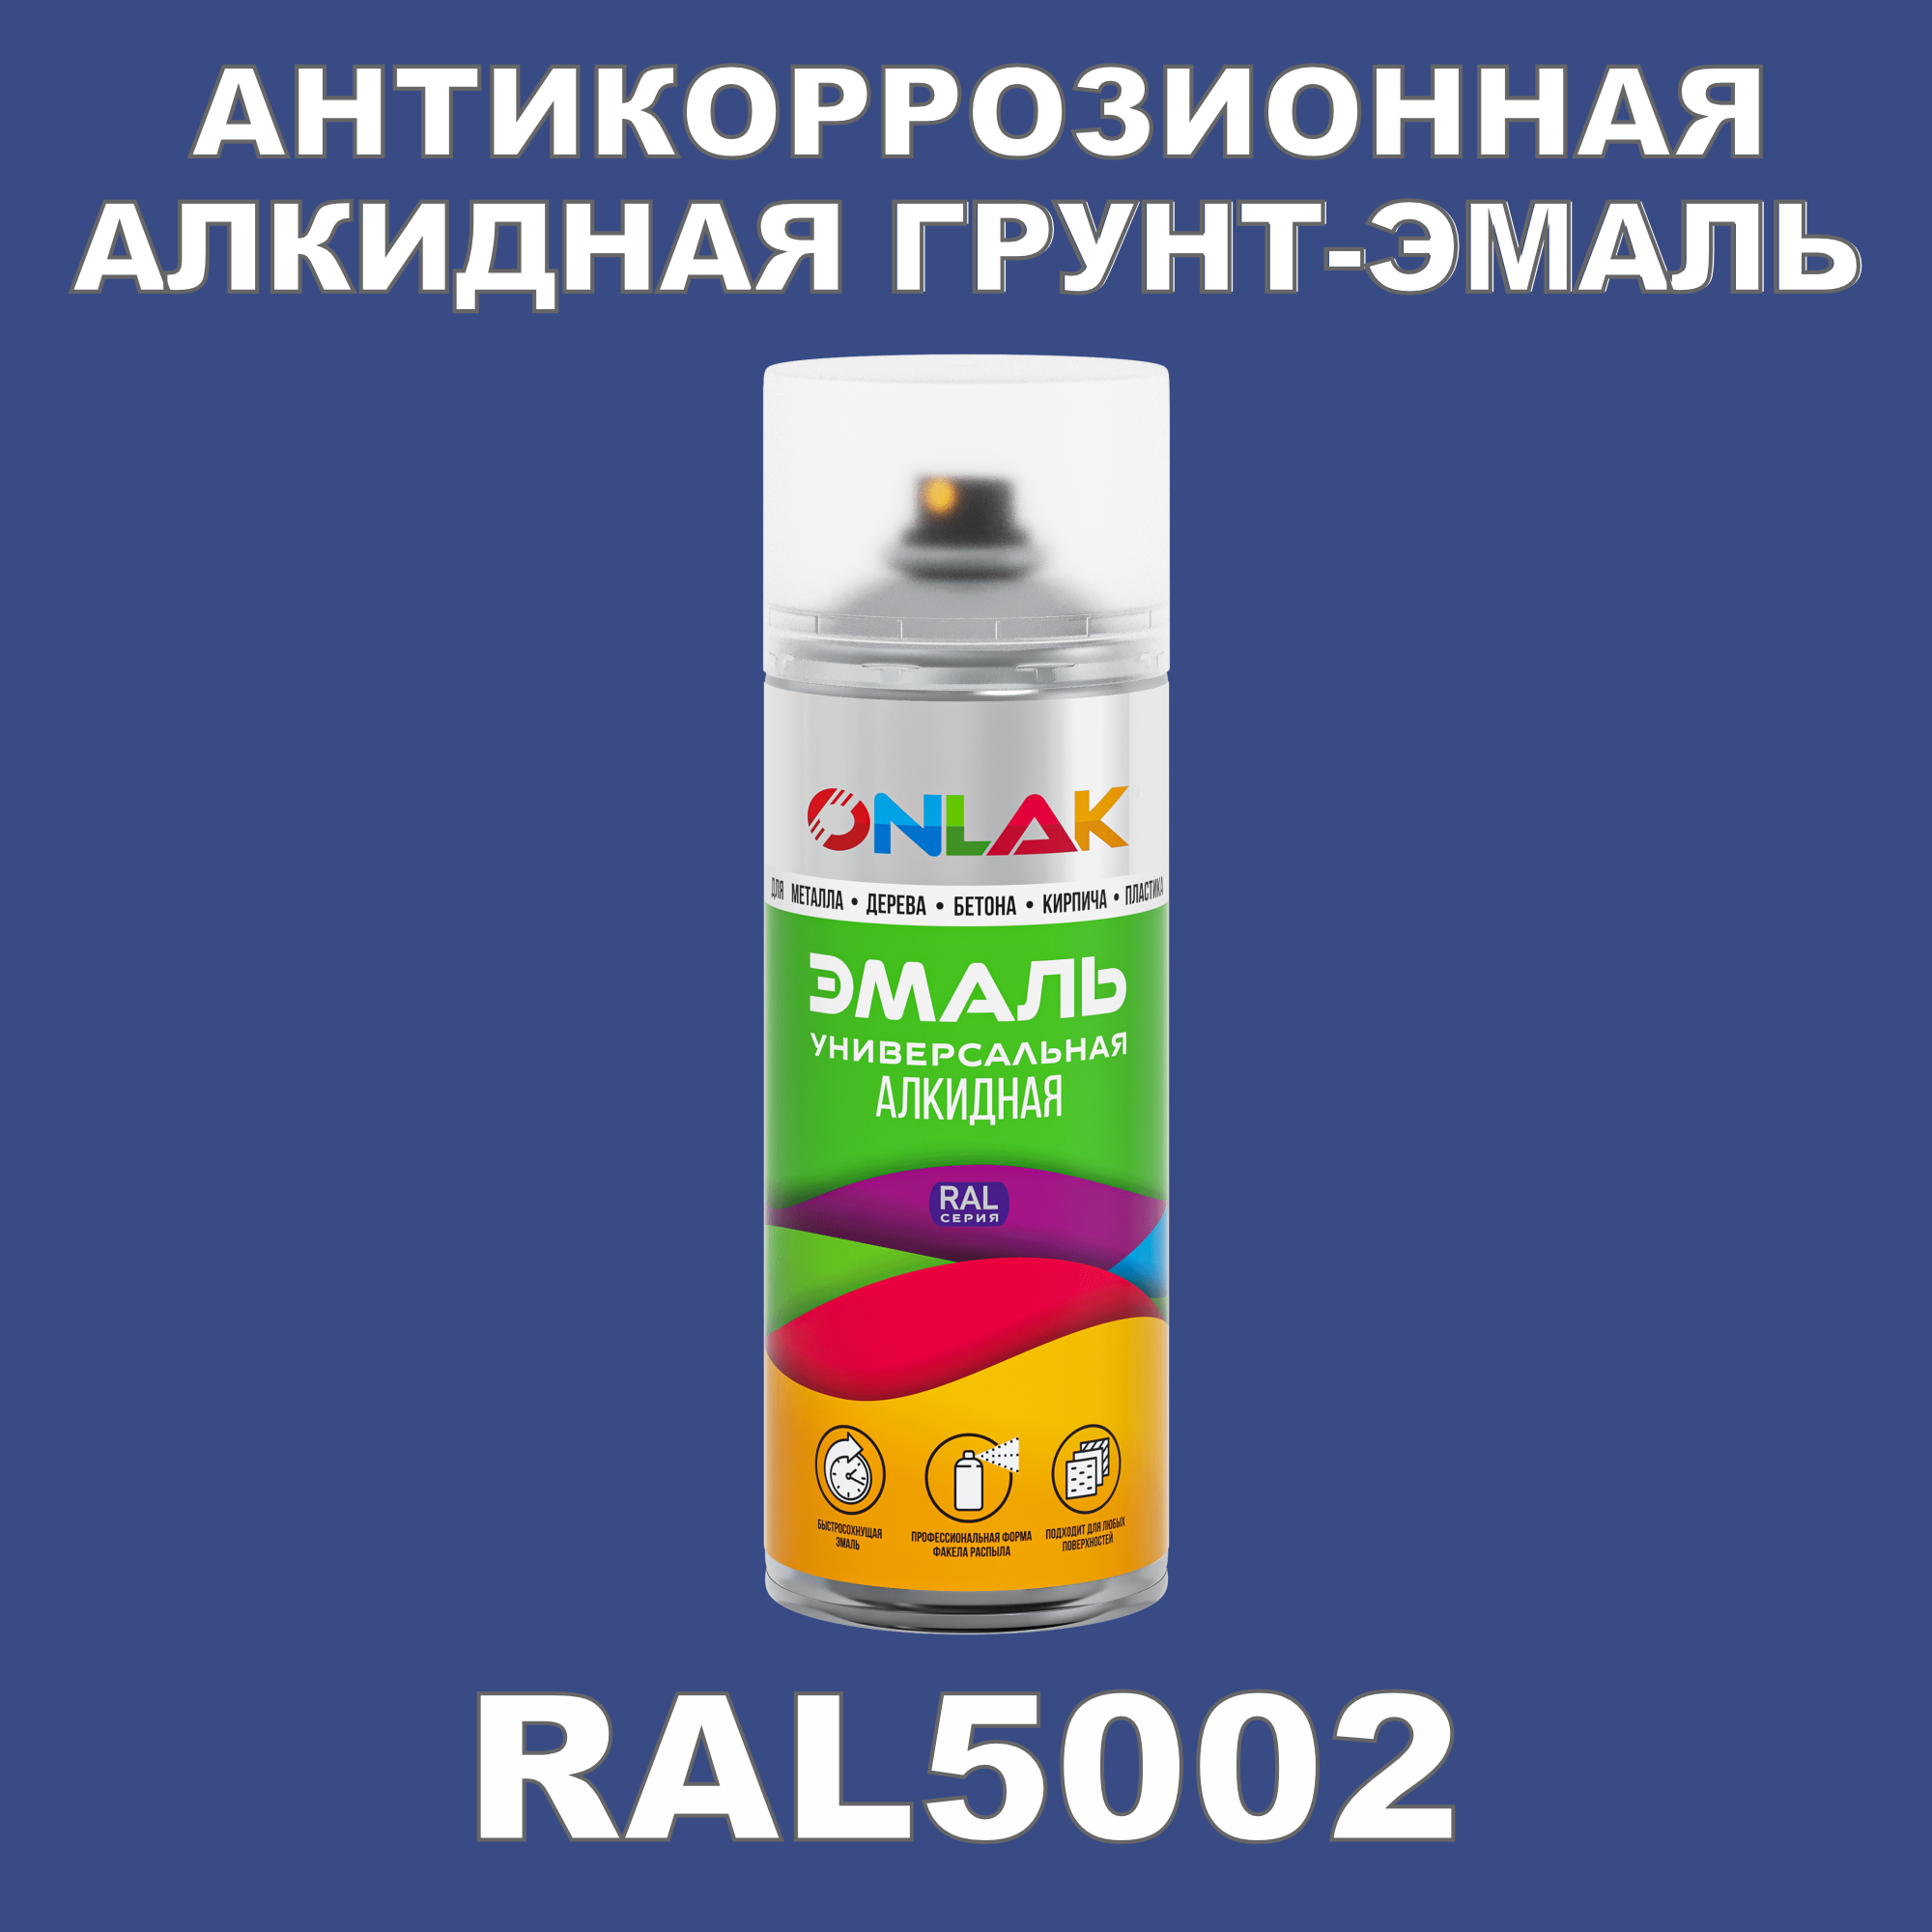 Антикоррозионная грунт-эмаль ONLAK RAL5002 полуматовая для металла и защиты от ржавчины